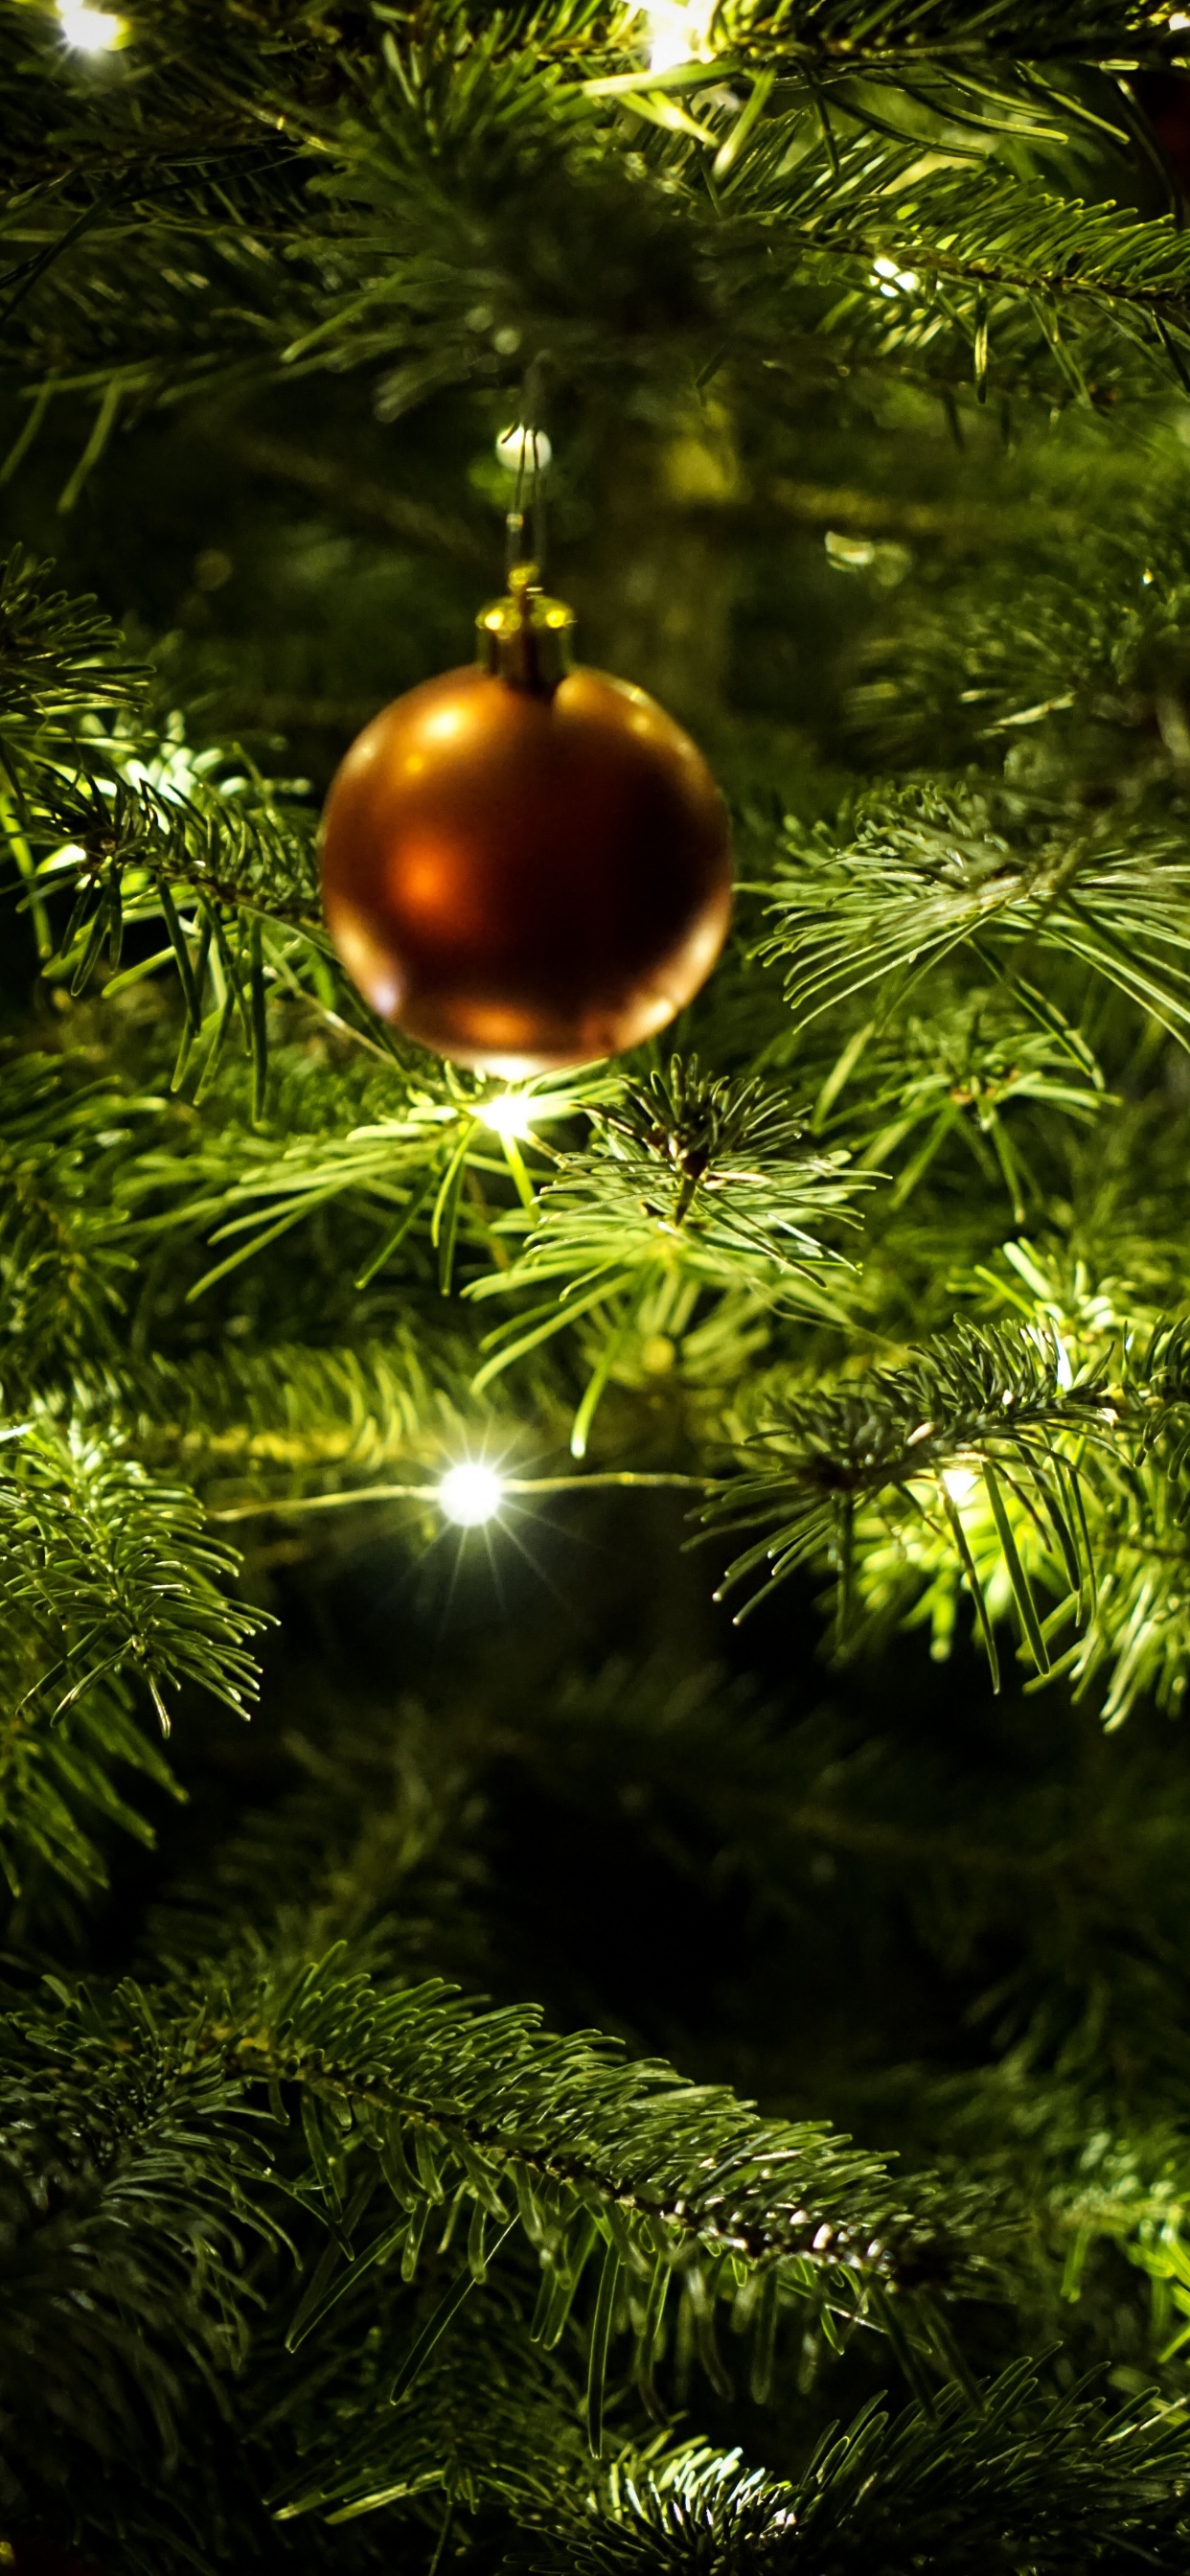 新的一年, 圣诞节那天, 圣诞节的装饰品, 圣诞装饰, 圣诞树 壁纸 1242x2688 允许